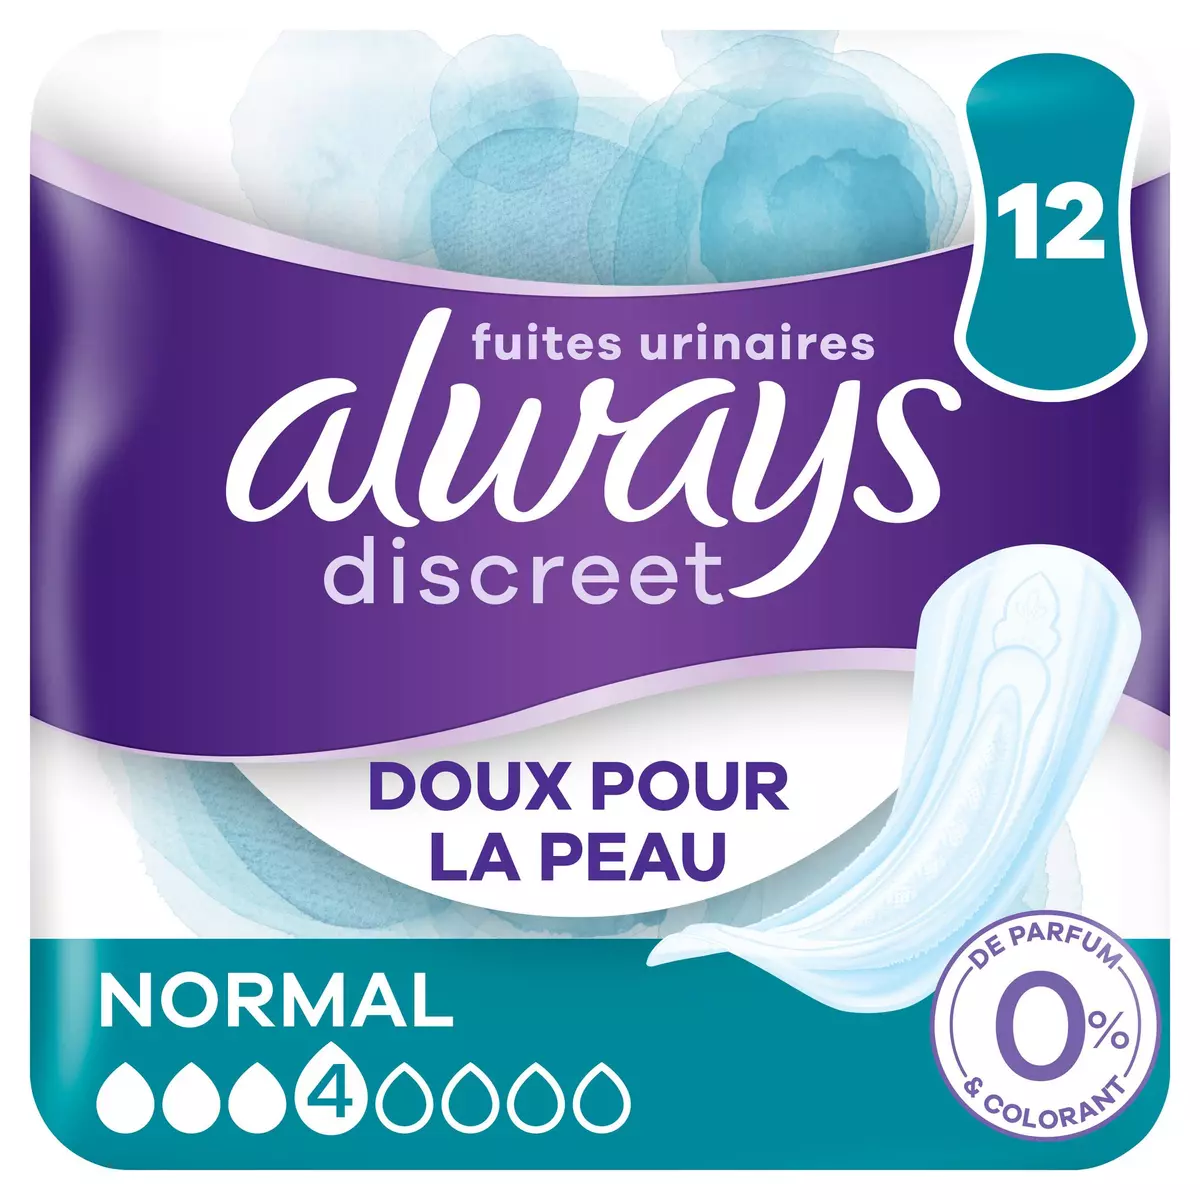 ALWAYS Discreet Serviettes pour fuites urinaires normal 0% 12 serviettes